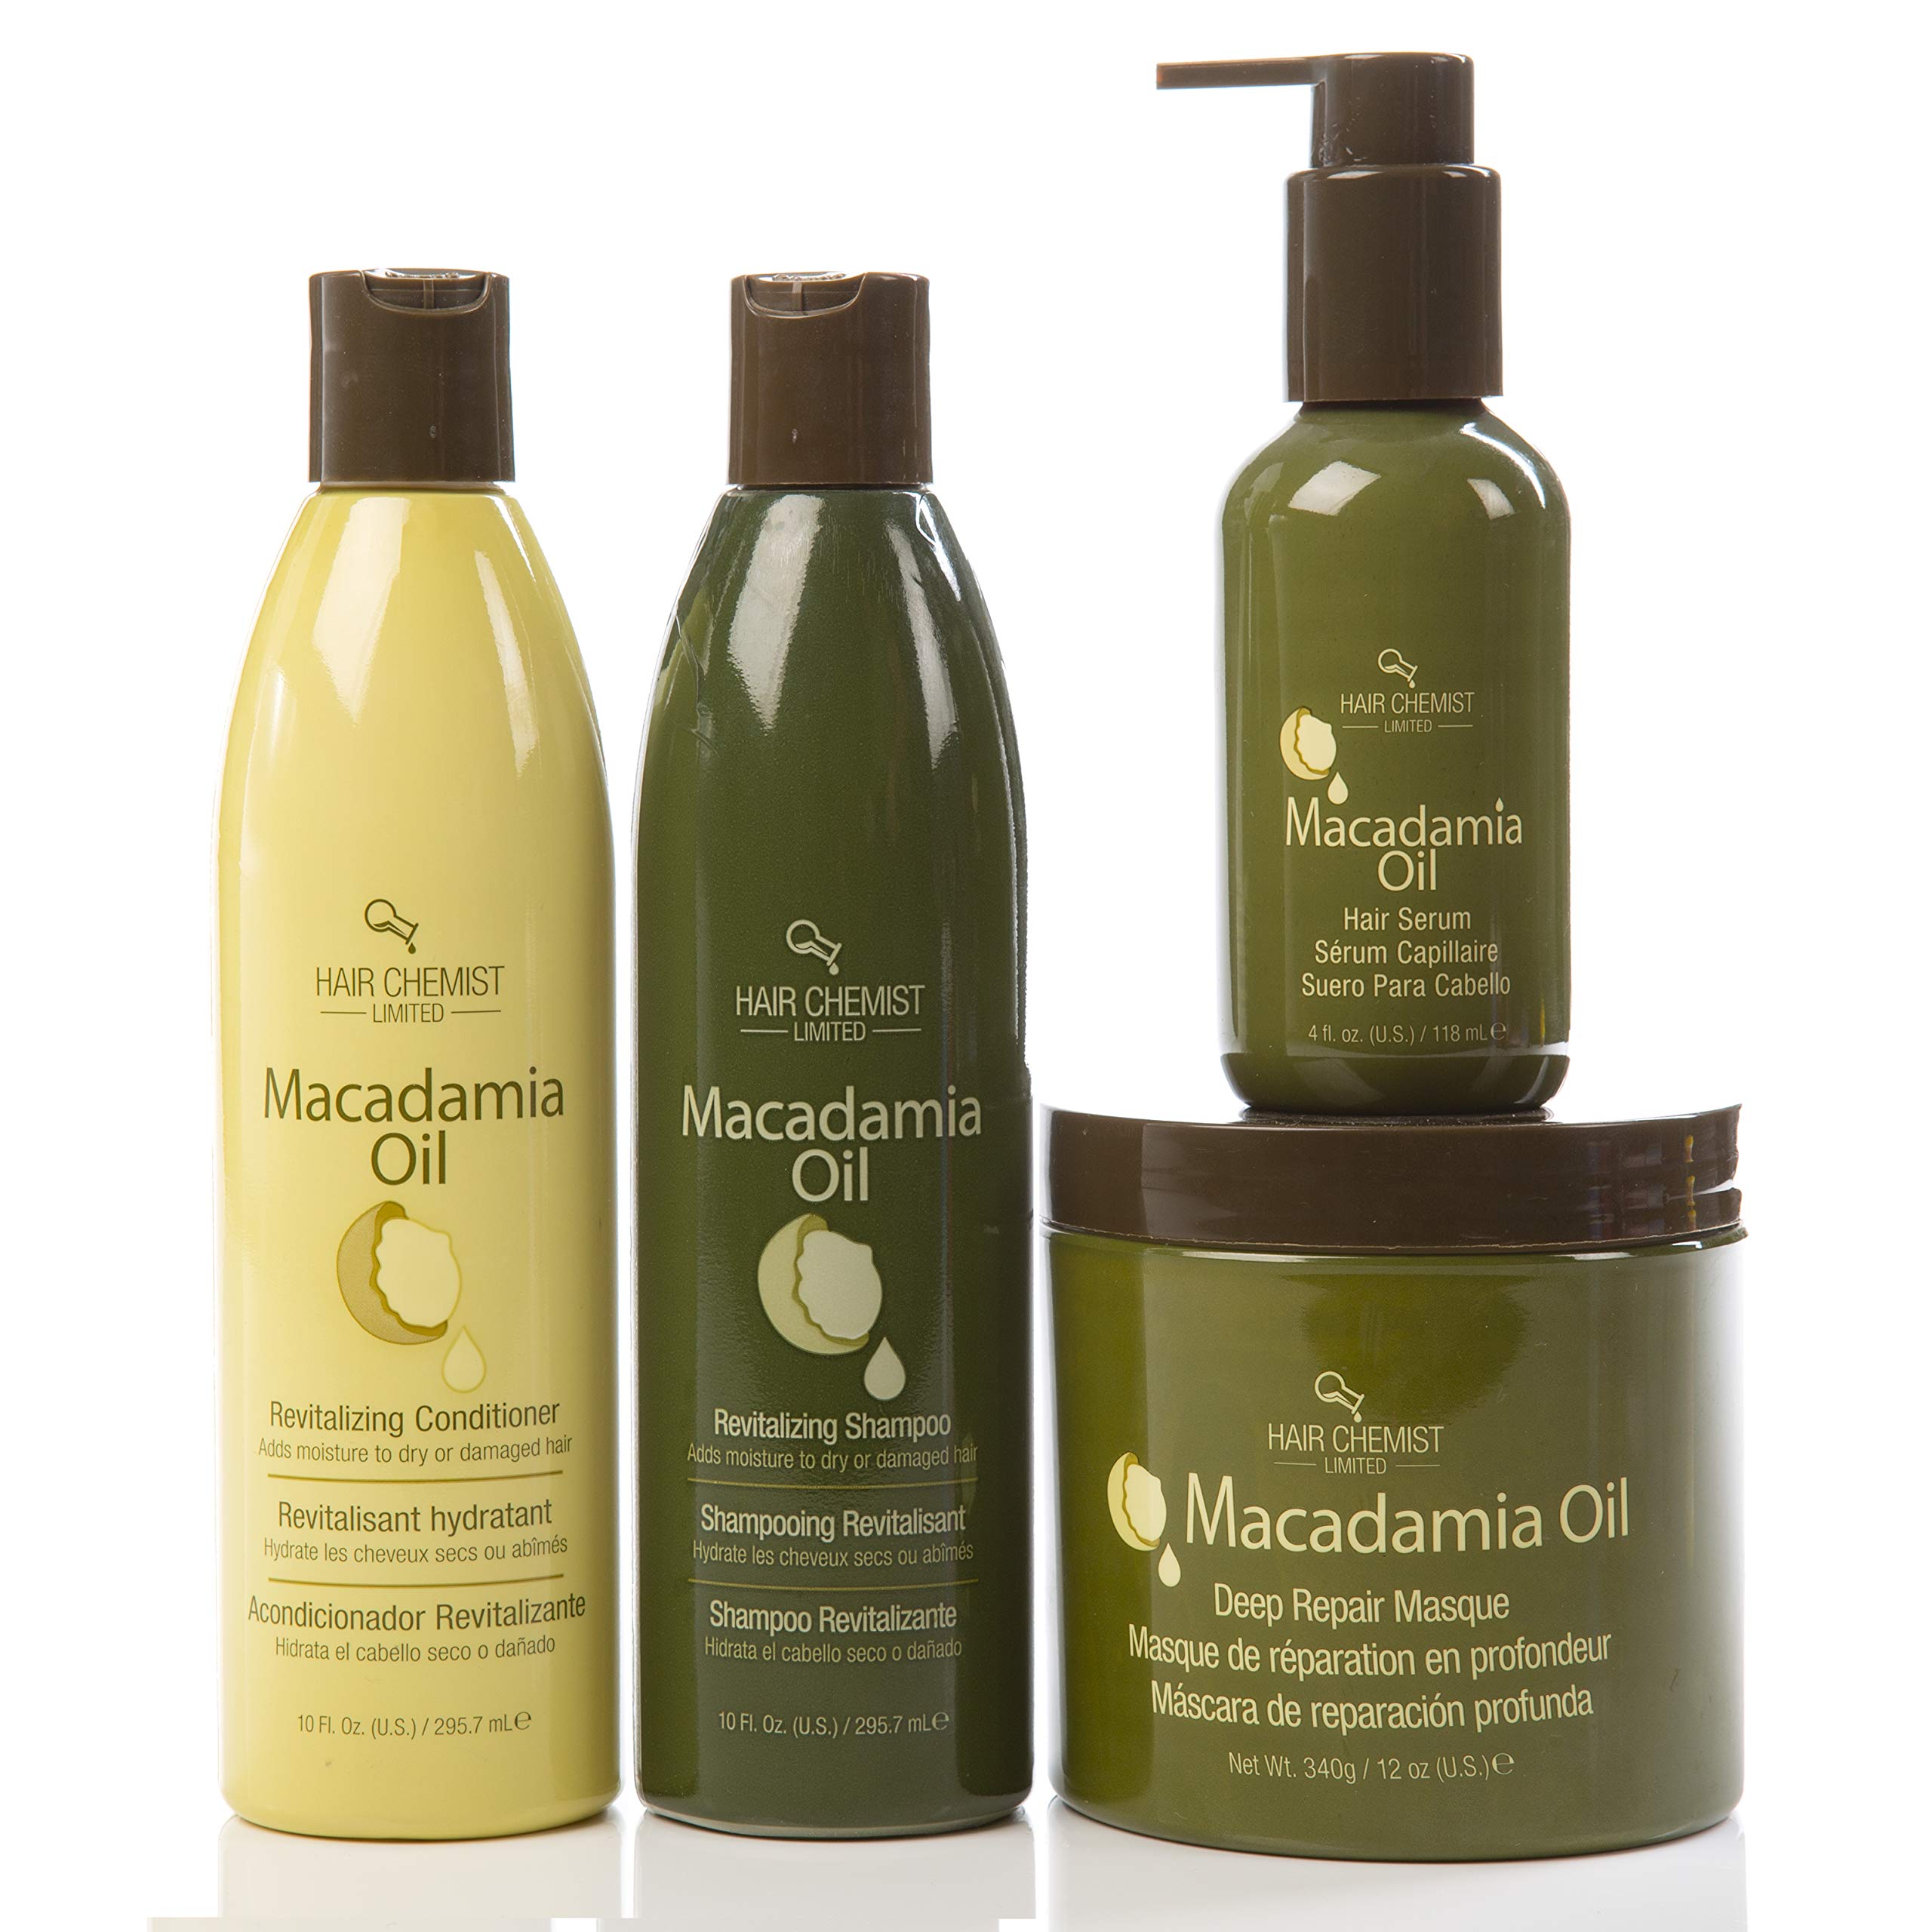 hair chemist macadamia oil deep repair masque review